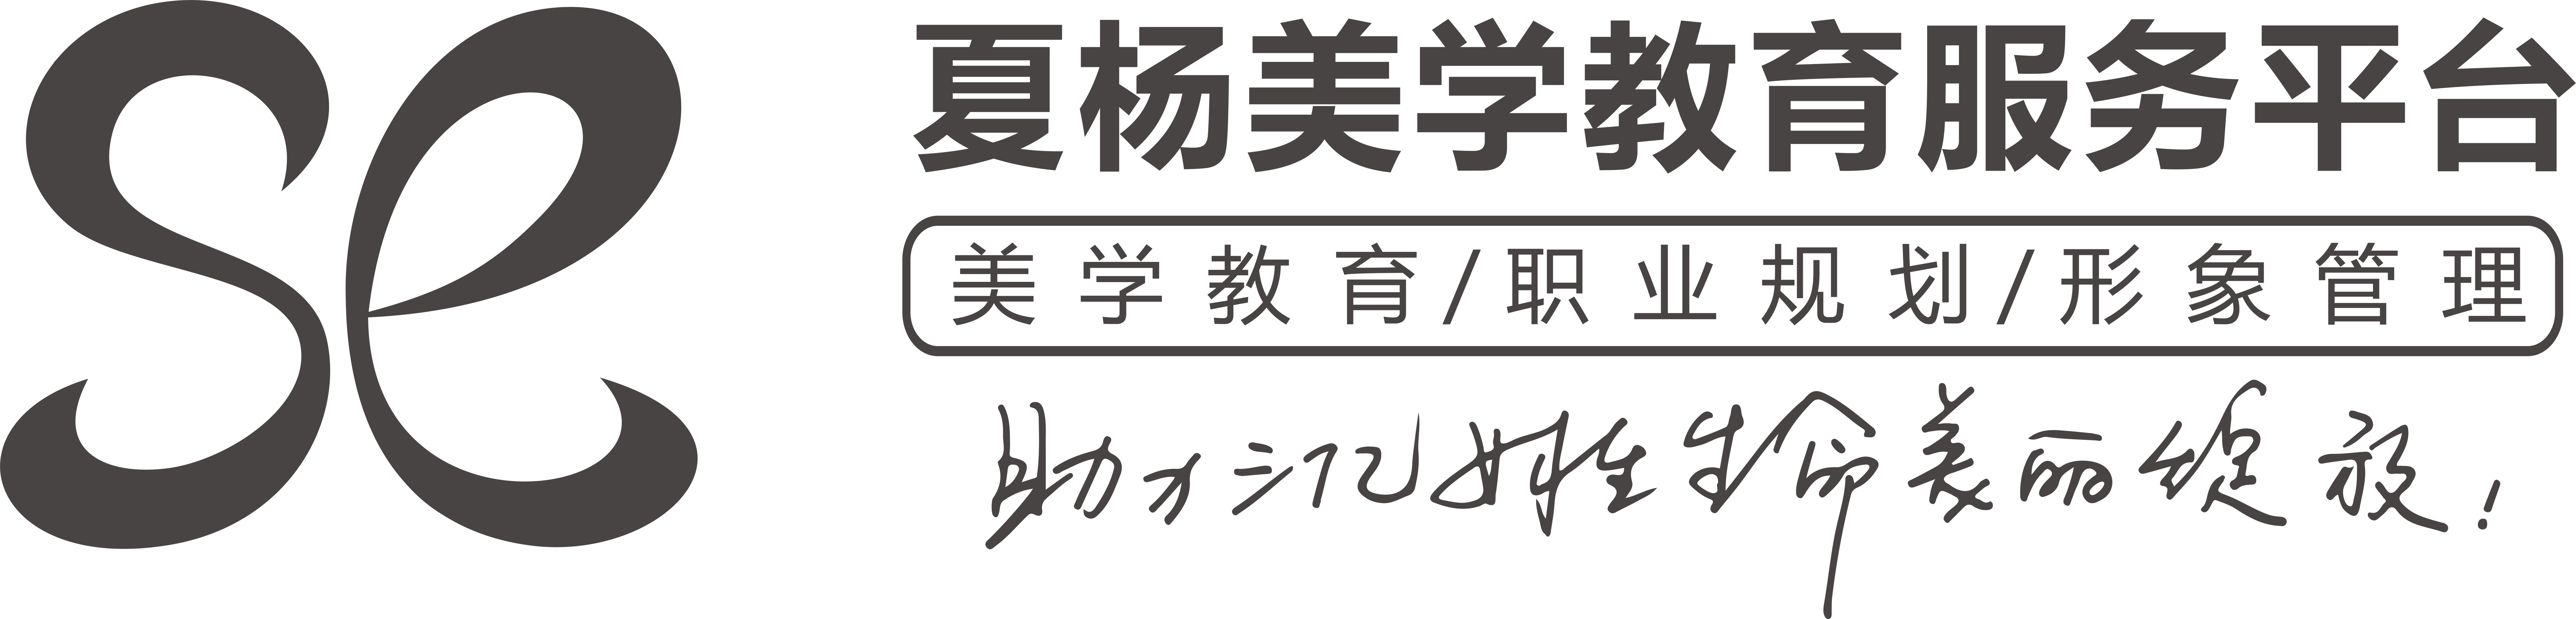 夏杨时尚教育 logo